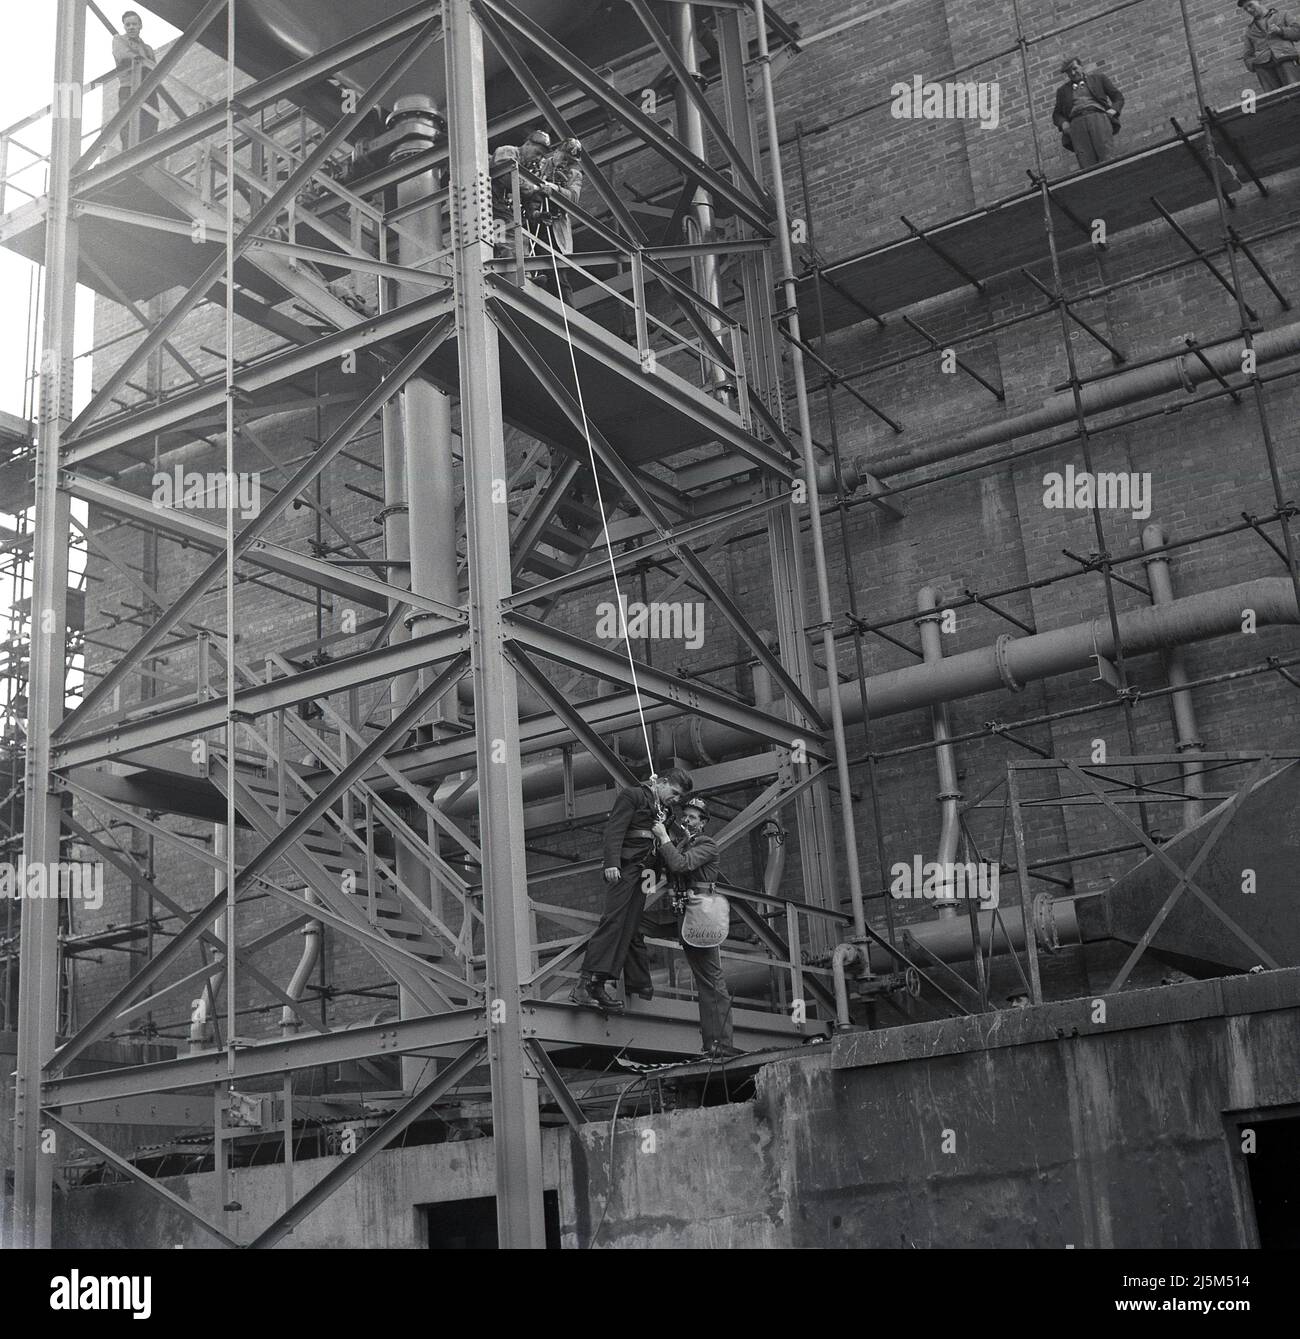 1950s, historique, forage de sécurité, ouvrier de l'acier étant abaissé à partir d'un palan de grande structure, étant tenu par un autre travailleur portant des appareils respiratoires, steelworks, Abbey Works, Margam, Port Talbot, Pays de Galles, Royaume-Uni. Banque D'Images